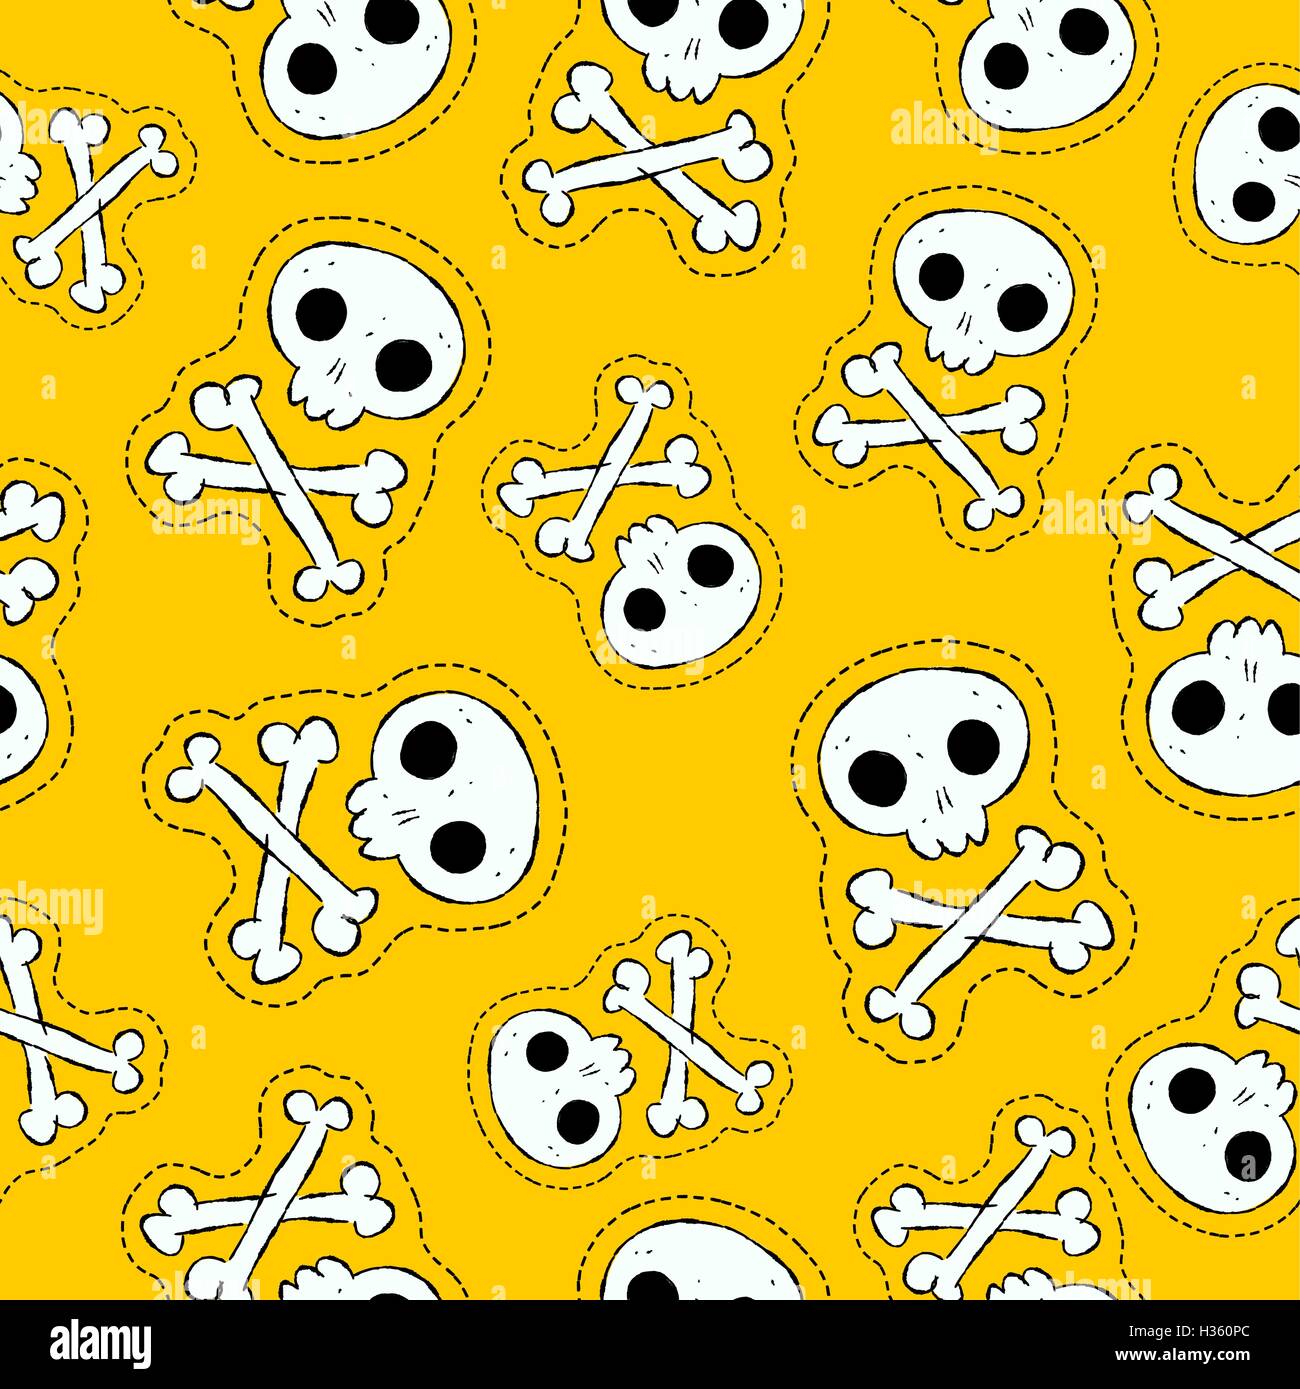 Handgezeichnete Musterdesign mit menschlichen Schädel Knochen Patch Ikonen, gruselige Skelett Abbildung auf gelbem Hintergrund. EPS10 Vektor. Stock Vektor